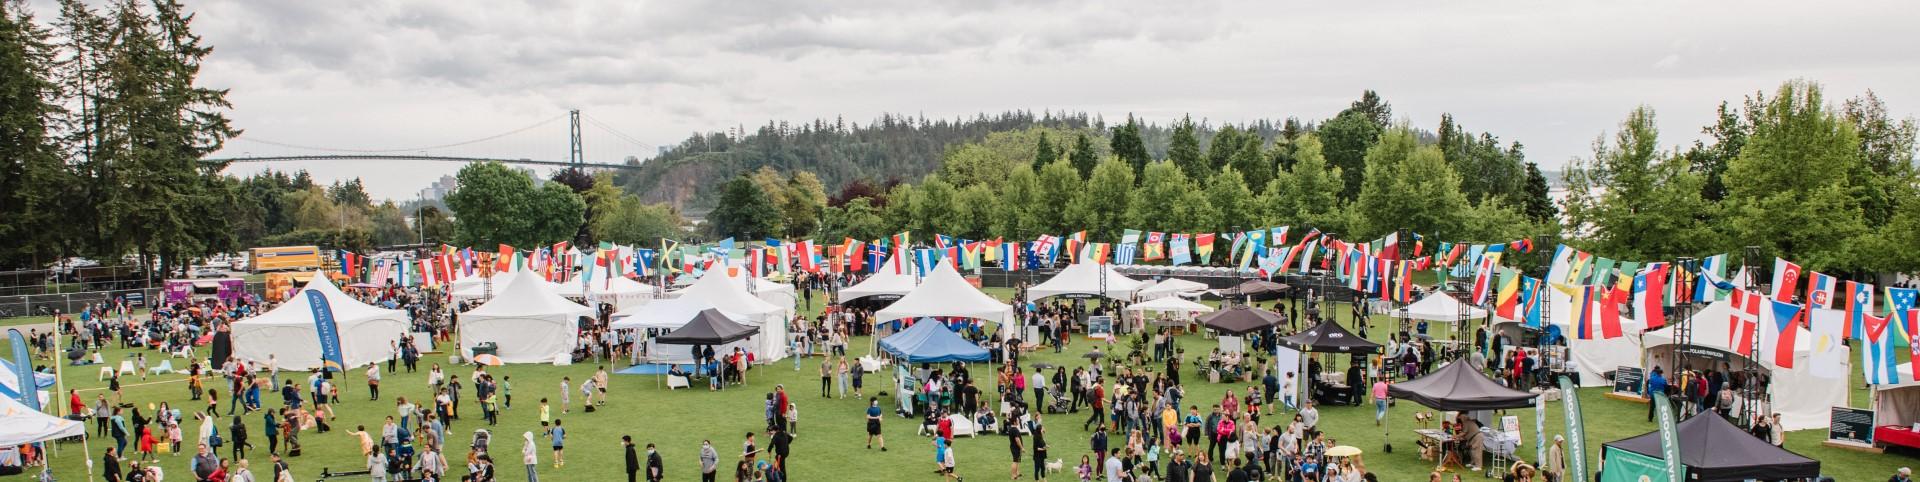 West Vancouver Community Cultural Fest